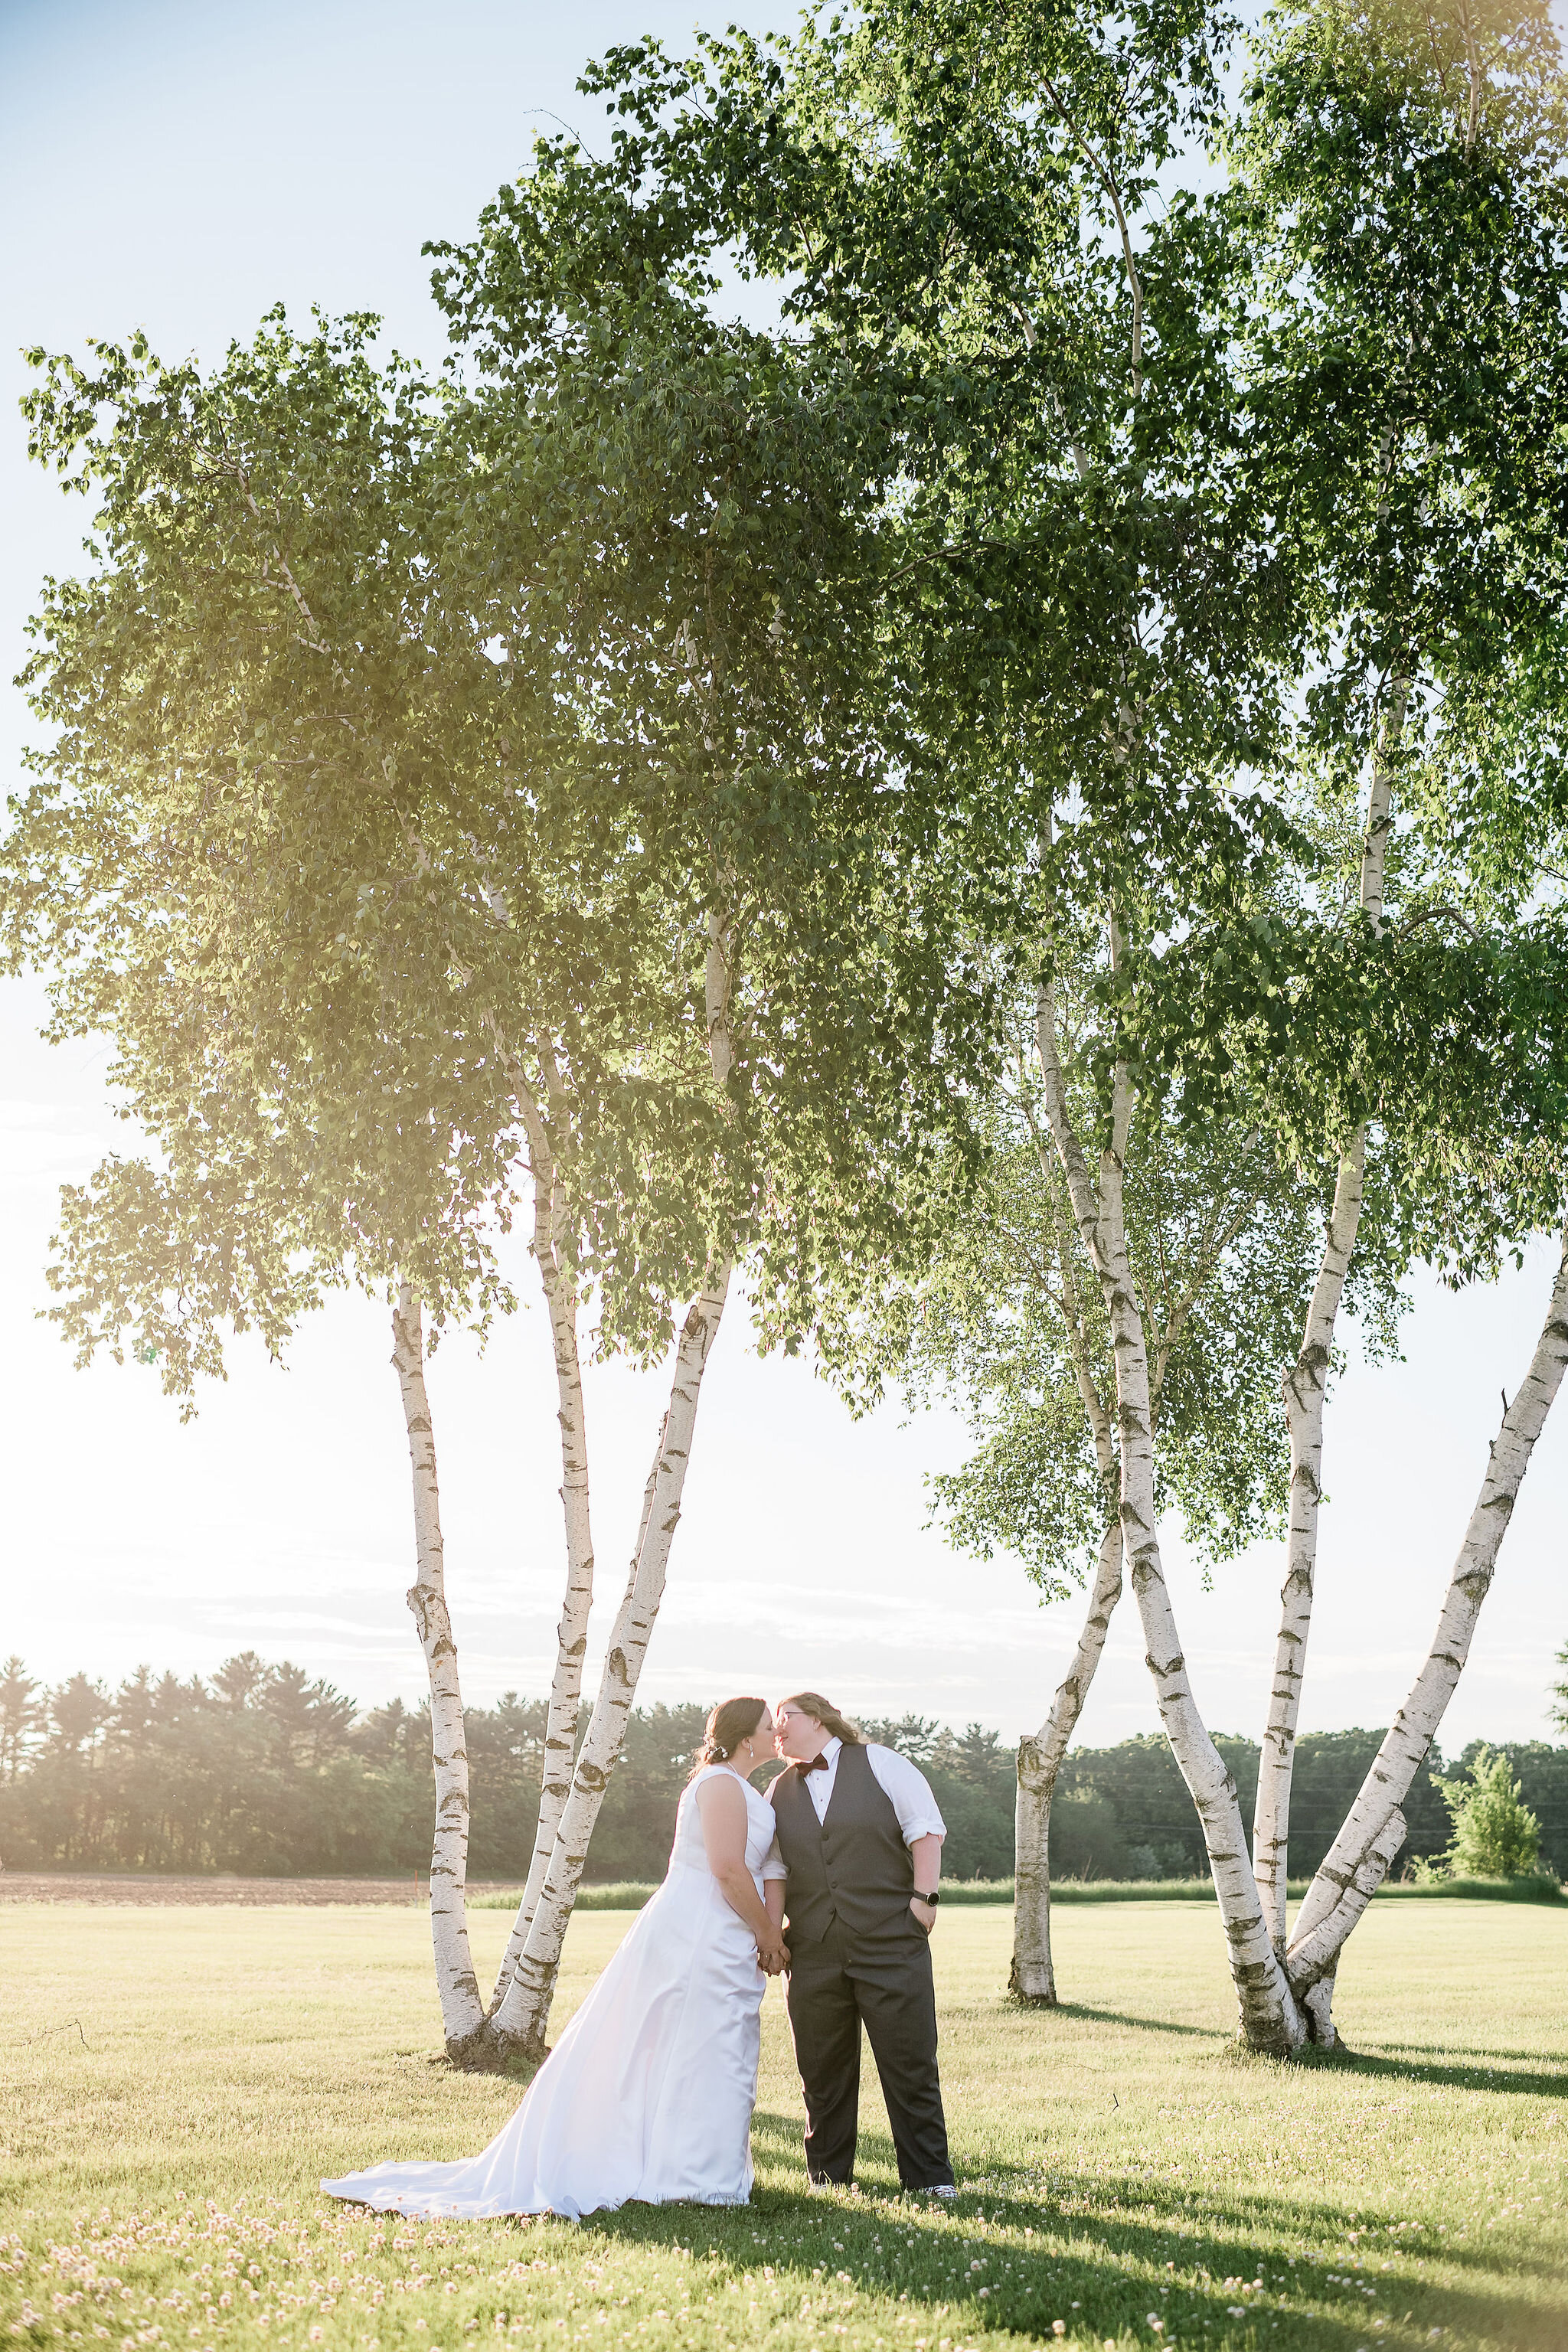 Brides underneath sunlit birch trees